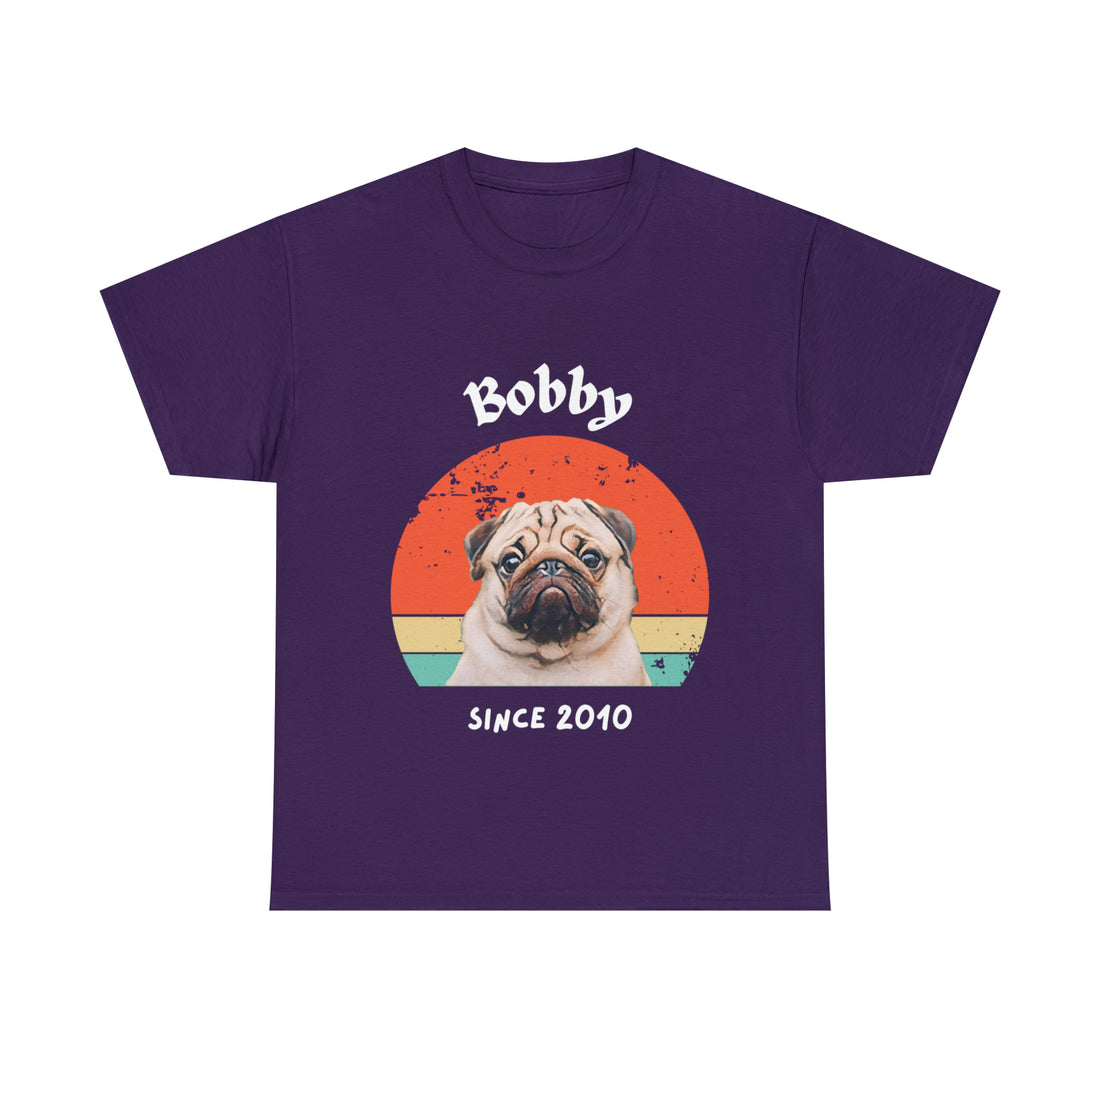 Customise Your Pet Photo Unisex T-shirt Retro Vintage Style, Dog Lover Shirt, Cat Image Custom T Shirt, Personalised Tee Shirts Birthday Gift